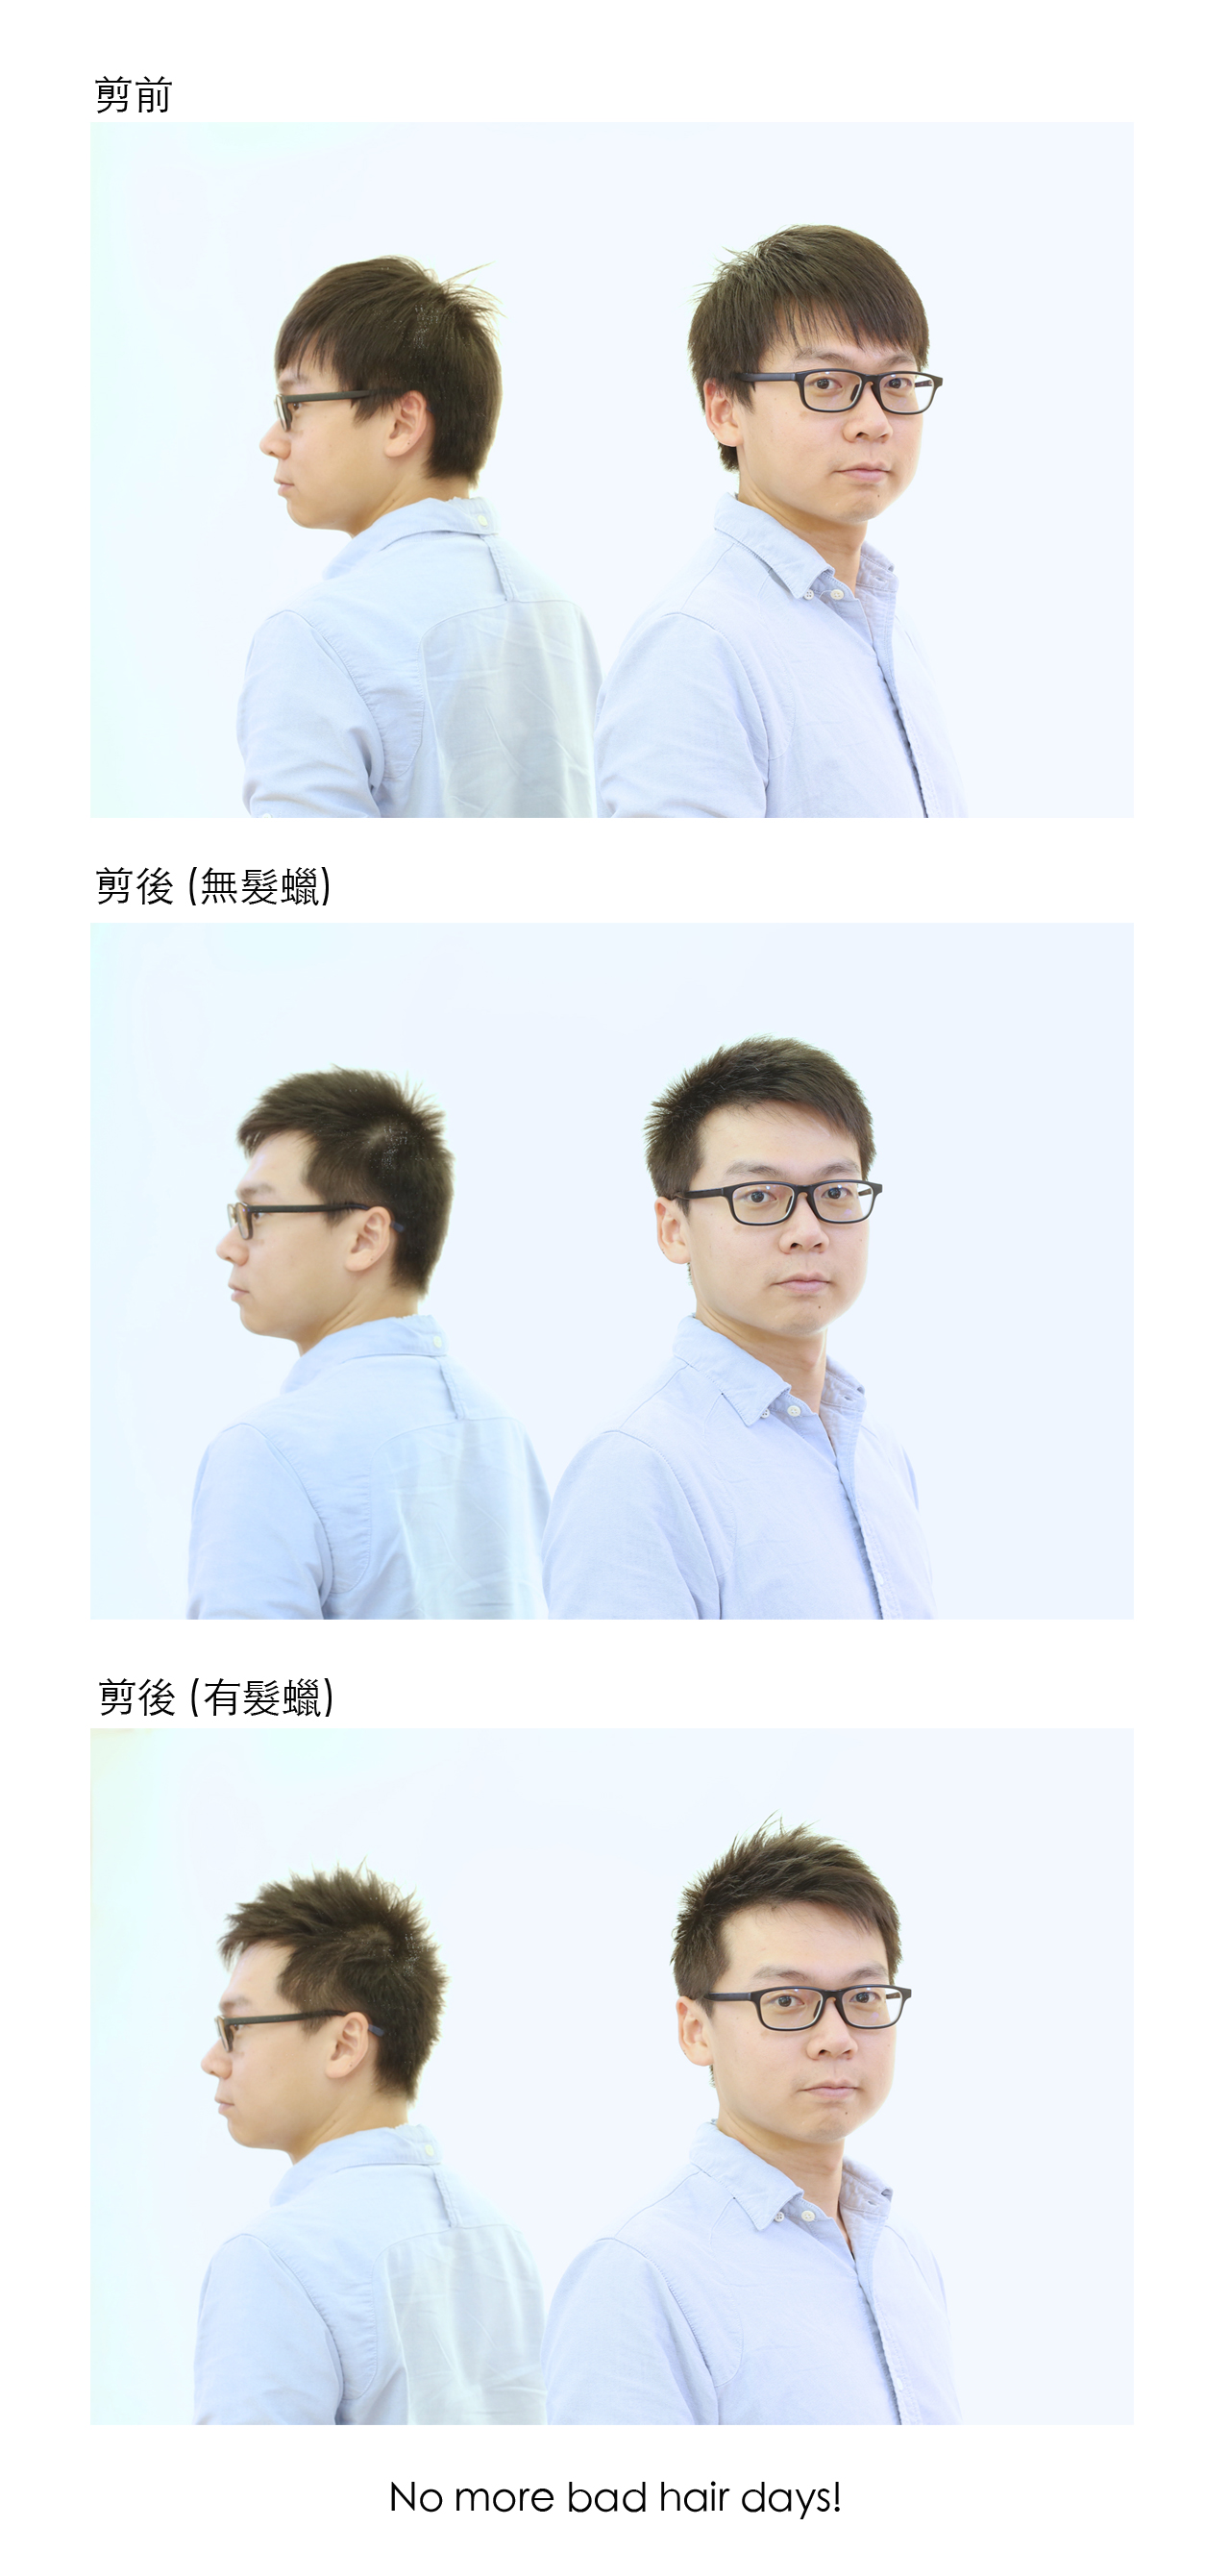 20190111陳先生剪髮前後照右側面組圖4